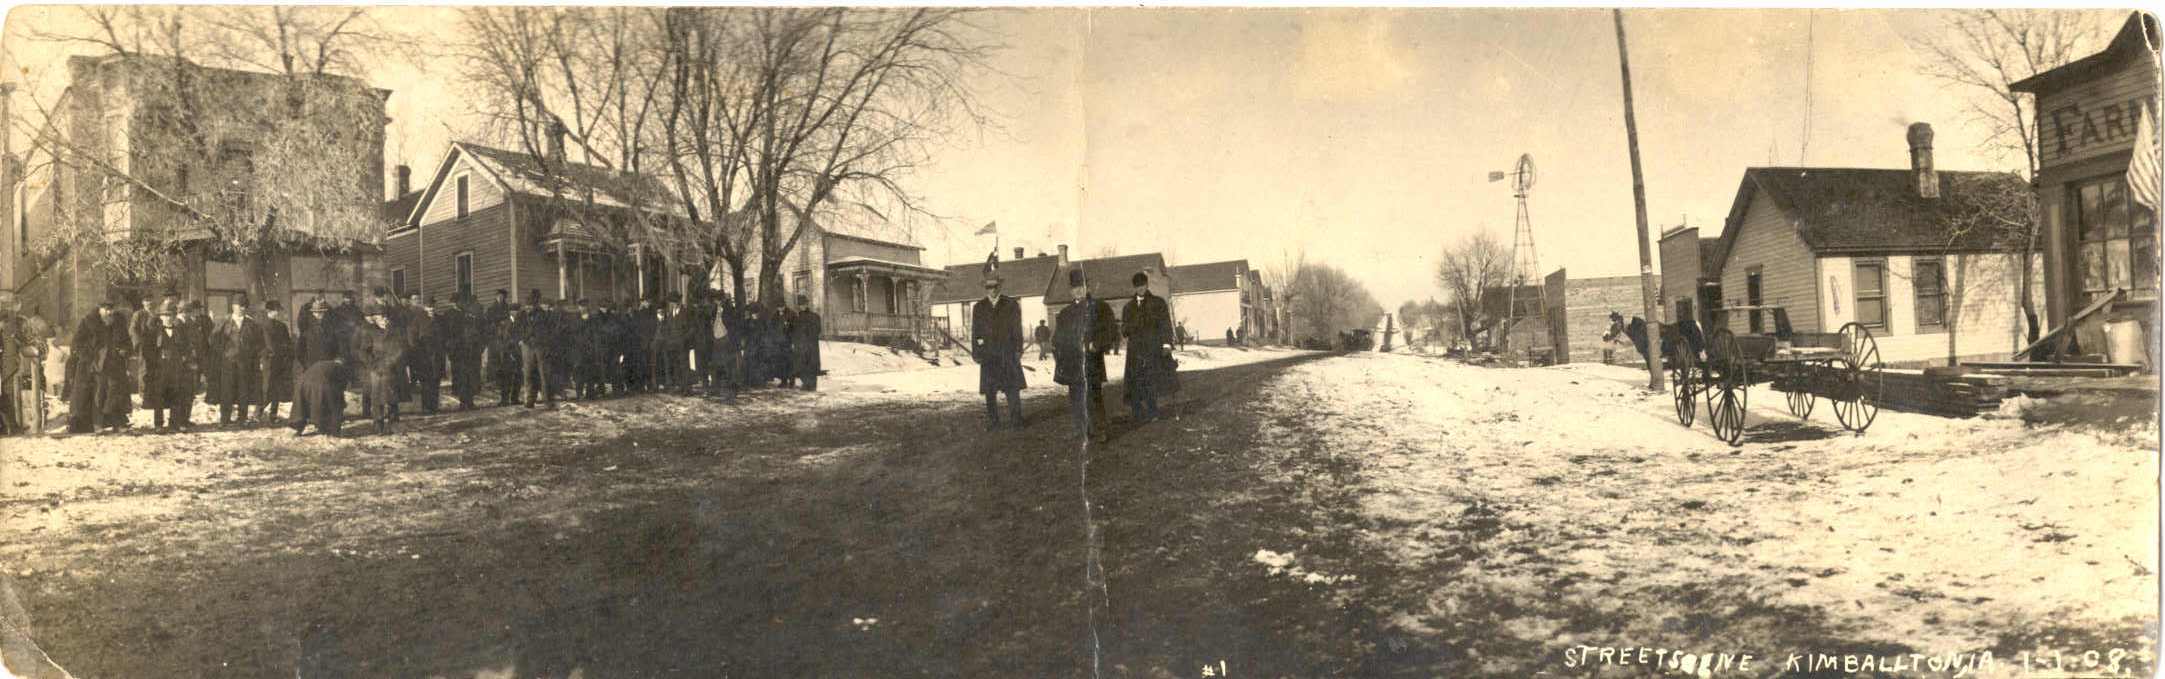 Kimballton Street Scene 1-1-1908, Audubon County, Iowa